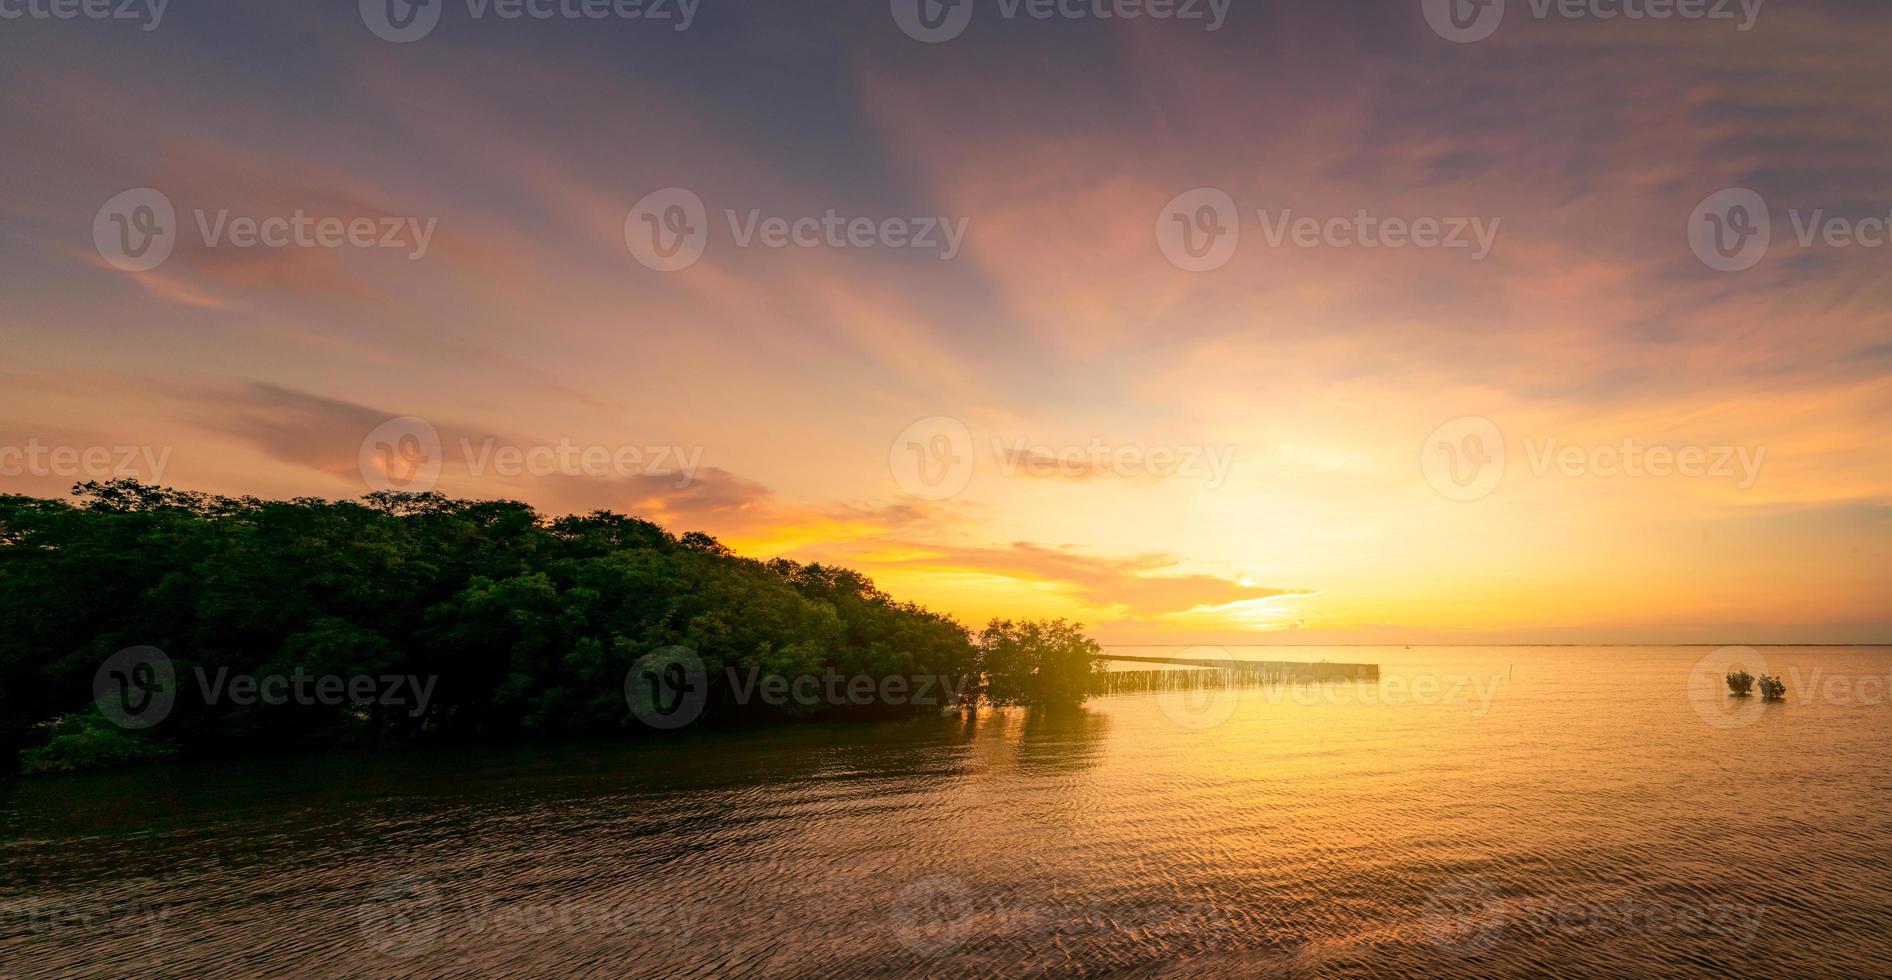 schöner sonnenuntergangshimmel über dem tropischen meer nahe mangrovenwald. goldener sonnenuntergangshimmel. Skyline am Meer. Schönheit in der Natur. Blick auf den tropischen Strand. Oberfläche des Meerwassers mit kleiner Welle. ruhige See. foto